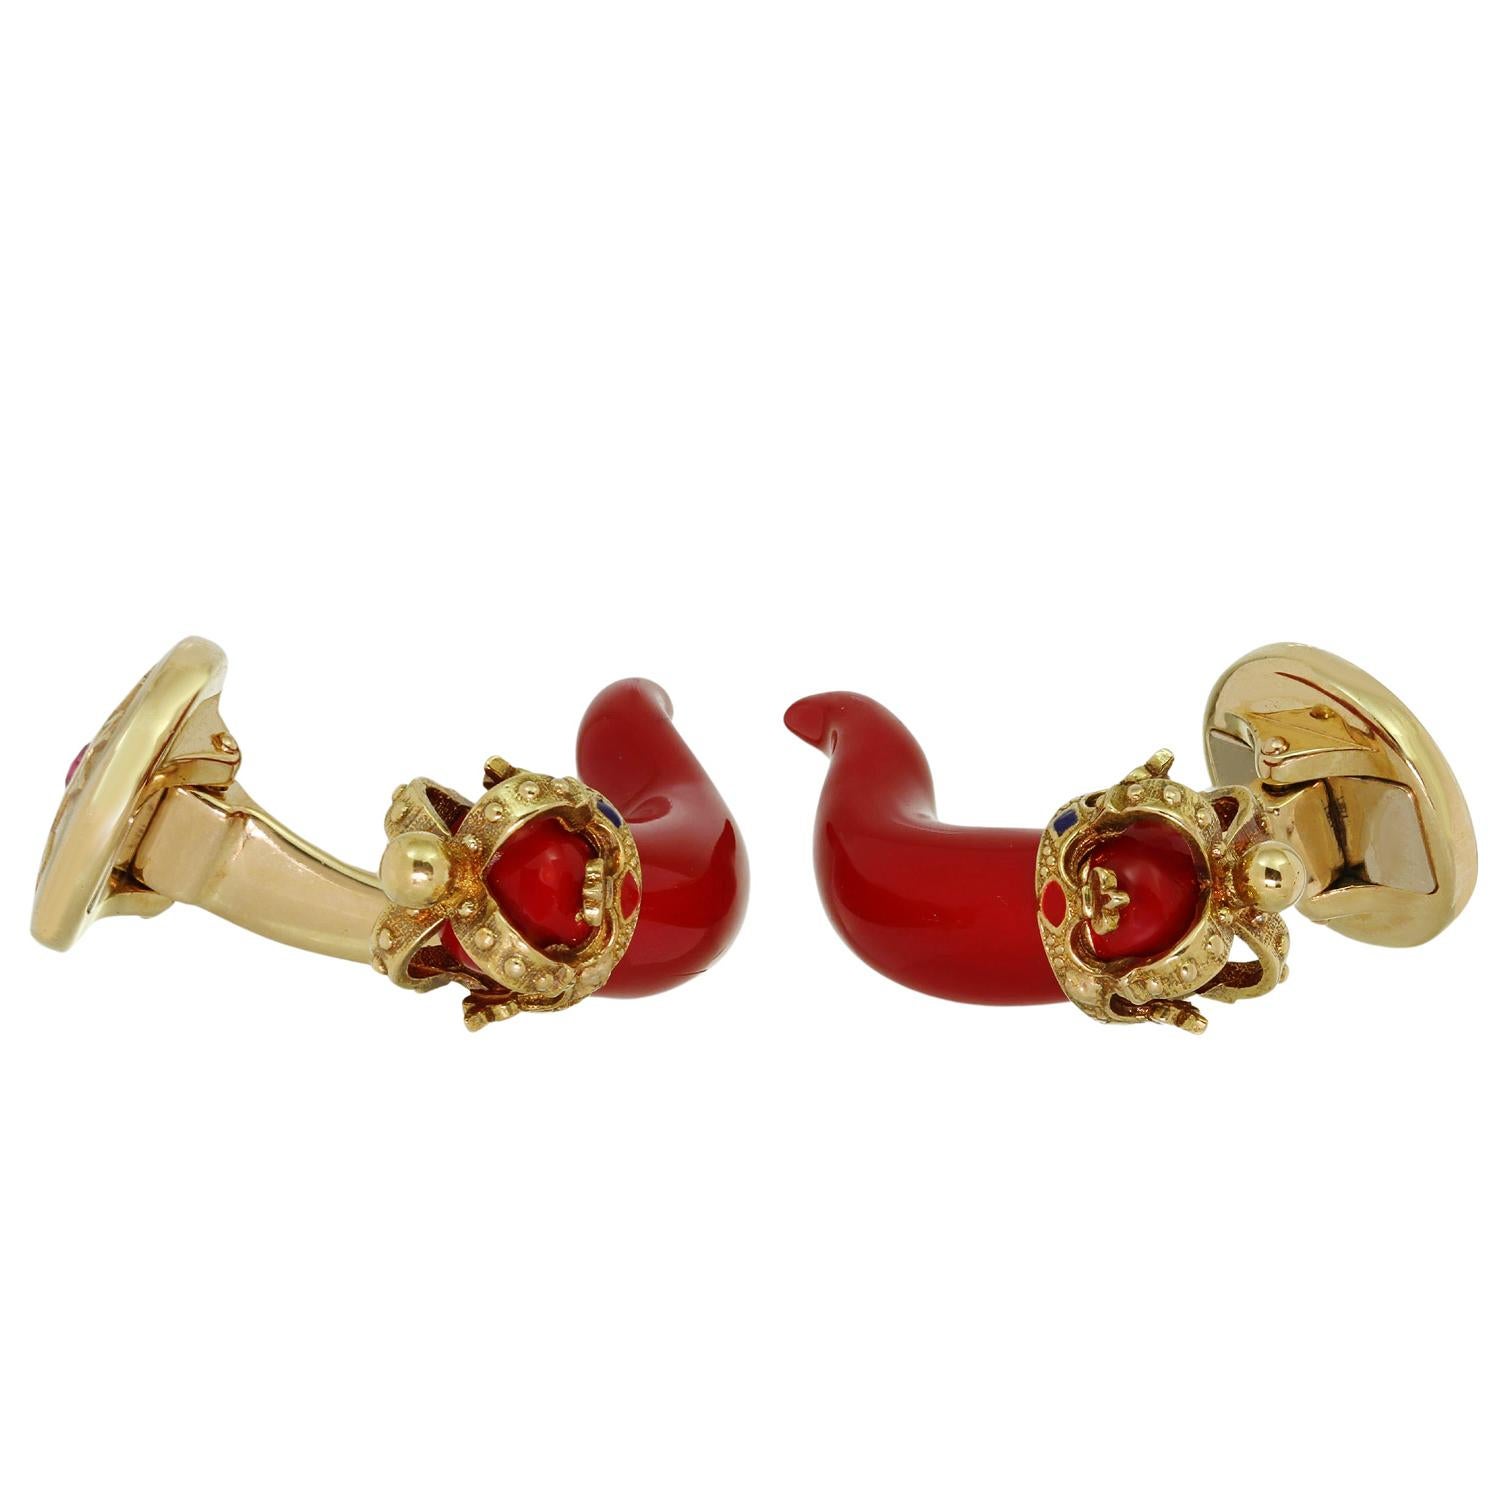 Diese wunderschönen Manschettenknöpfe von Dolce & Gabbana sind aus 18-karätigem Gelbgold gefertigt und zeigen rote Horn-Amulette aus Emaille mit goldenen Kronen, die mit emaillierten Motiven und roten Rubinen von schätzungsweise 0,09 Karat verziert